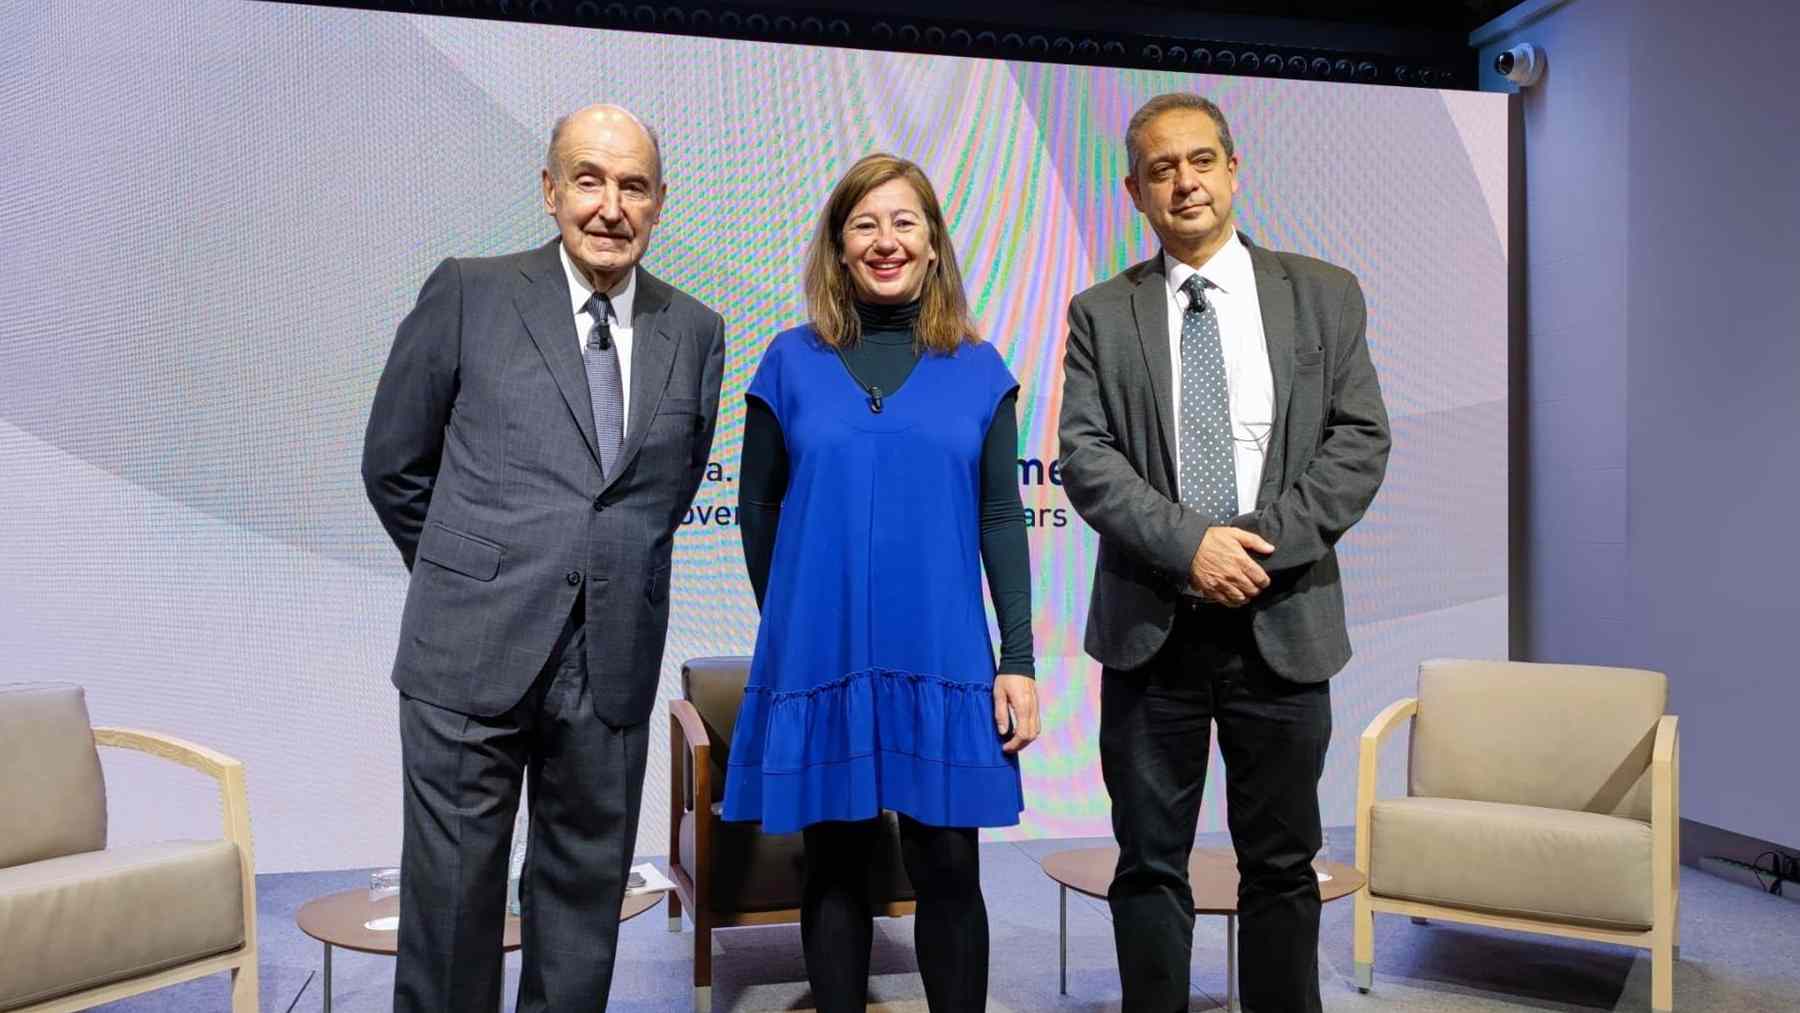 La presidenta del Govern balear, Francina Armengol, junto con el ponente de la Constitución Miquel Roca y el periodista Enric Sierra – EUROPA PRESS